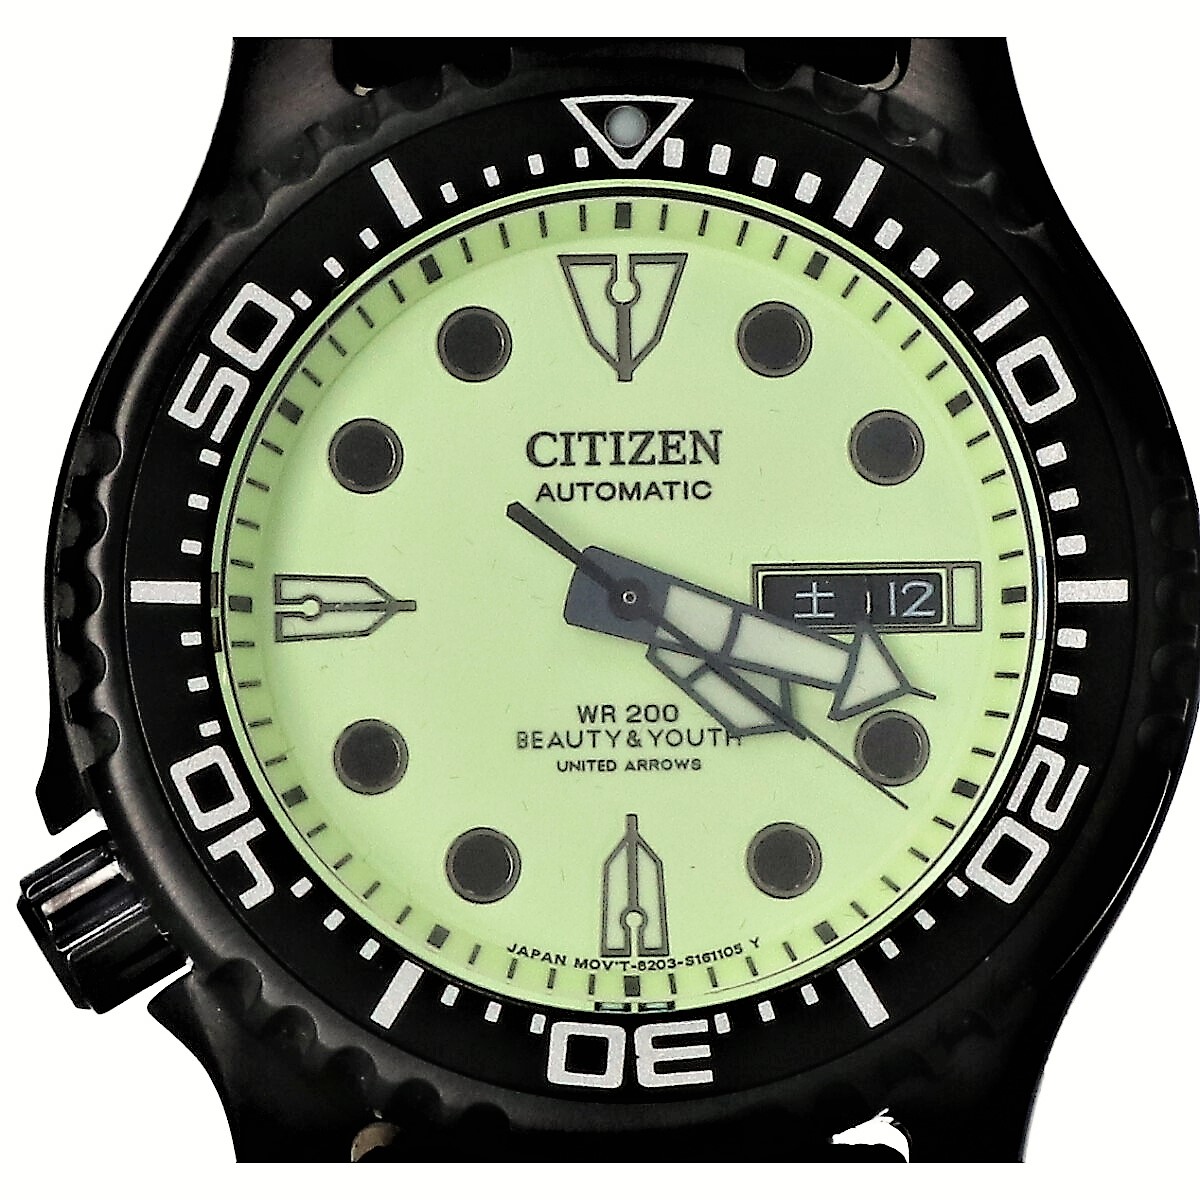 シチズンの×B&Y UNITED ARROWS 8203-S117470 オートマティック ダイバーデザイン 腕時計の買取実績です。